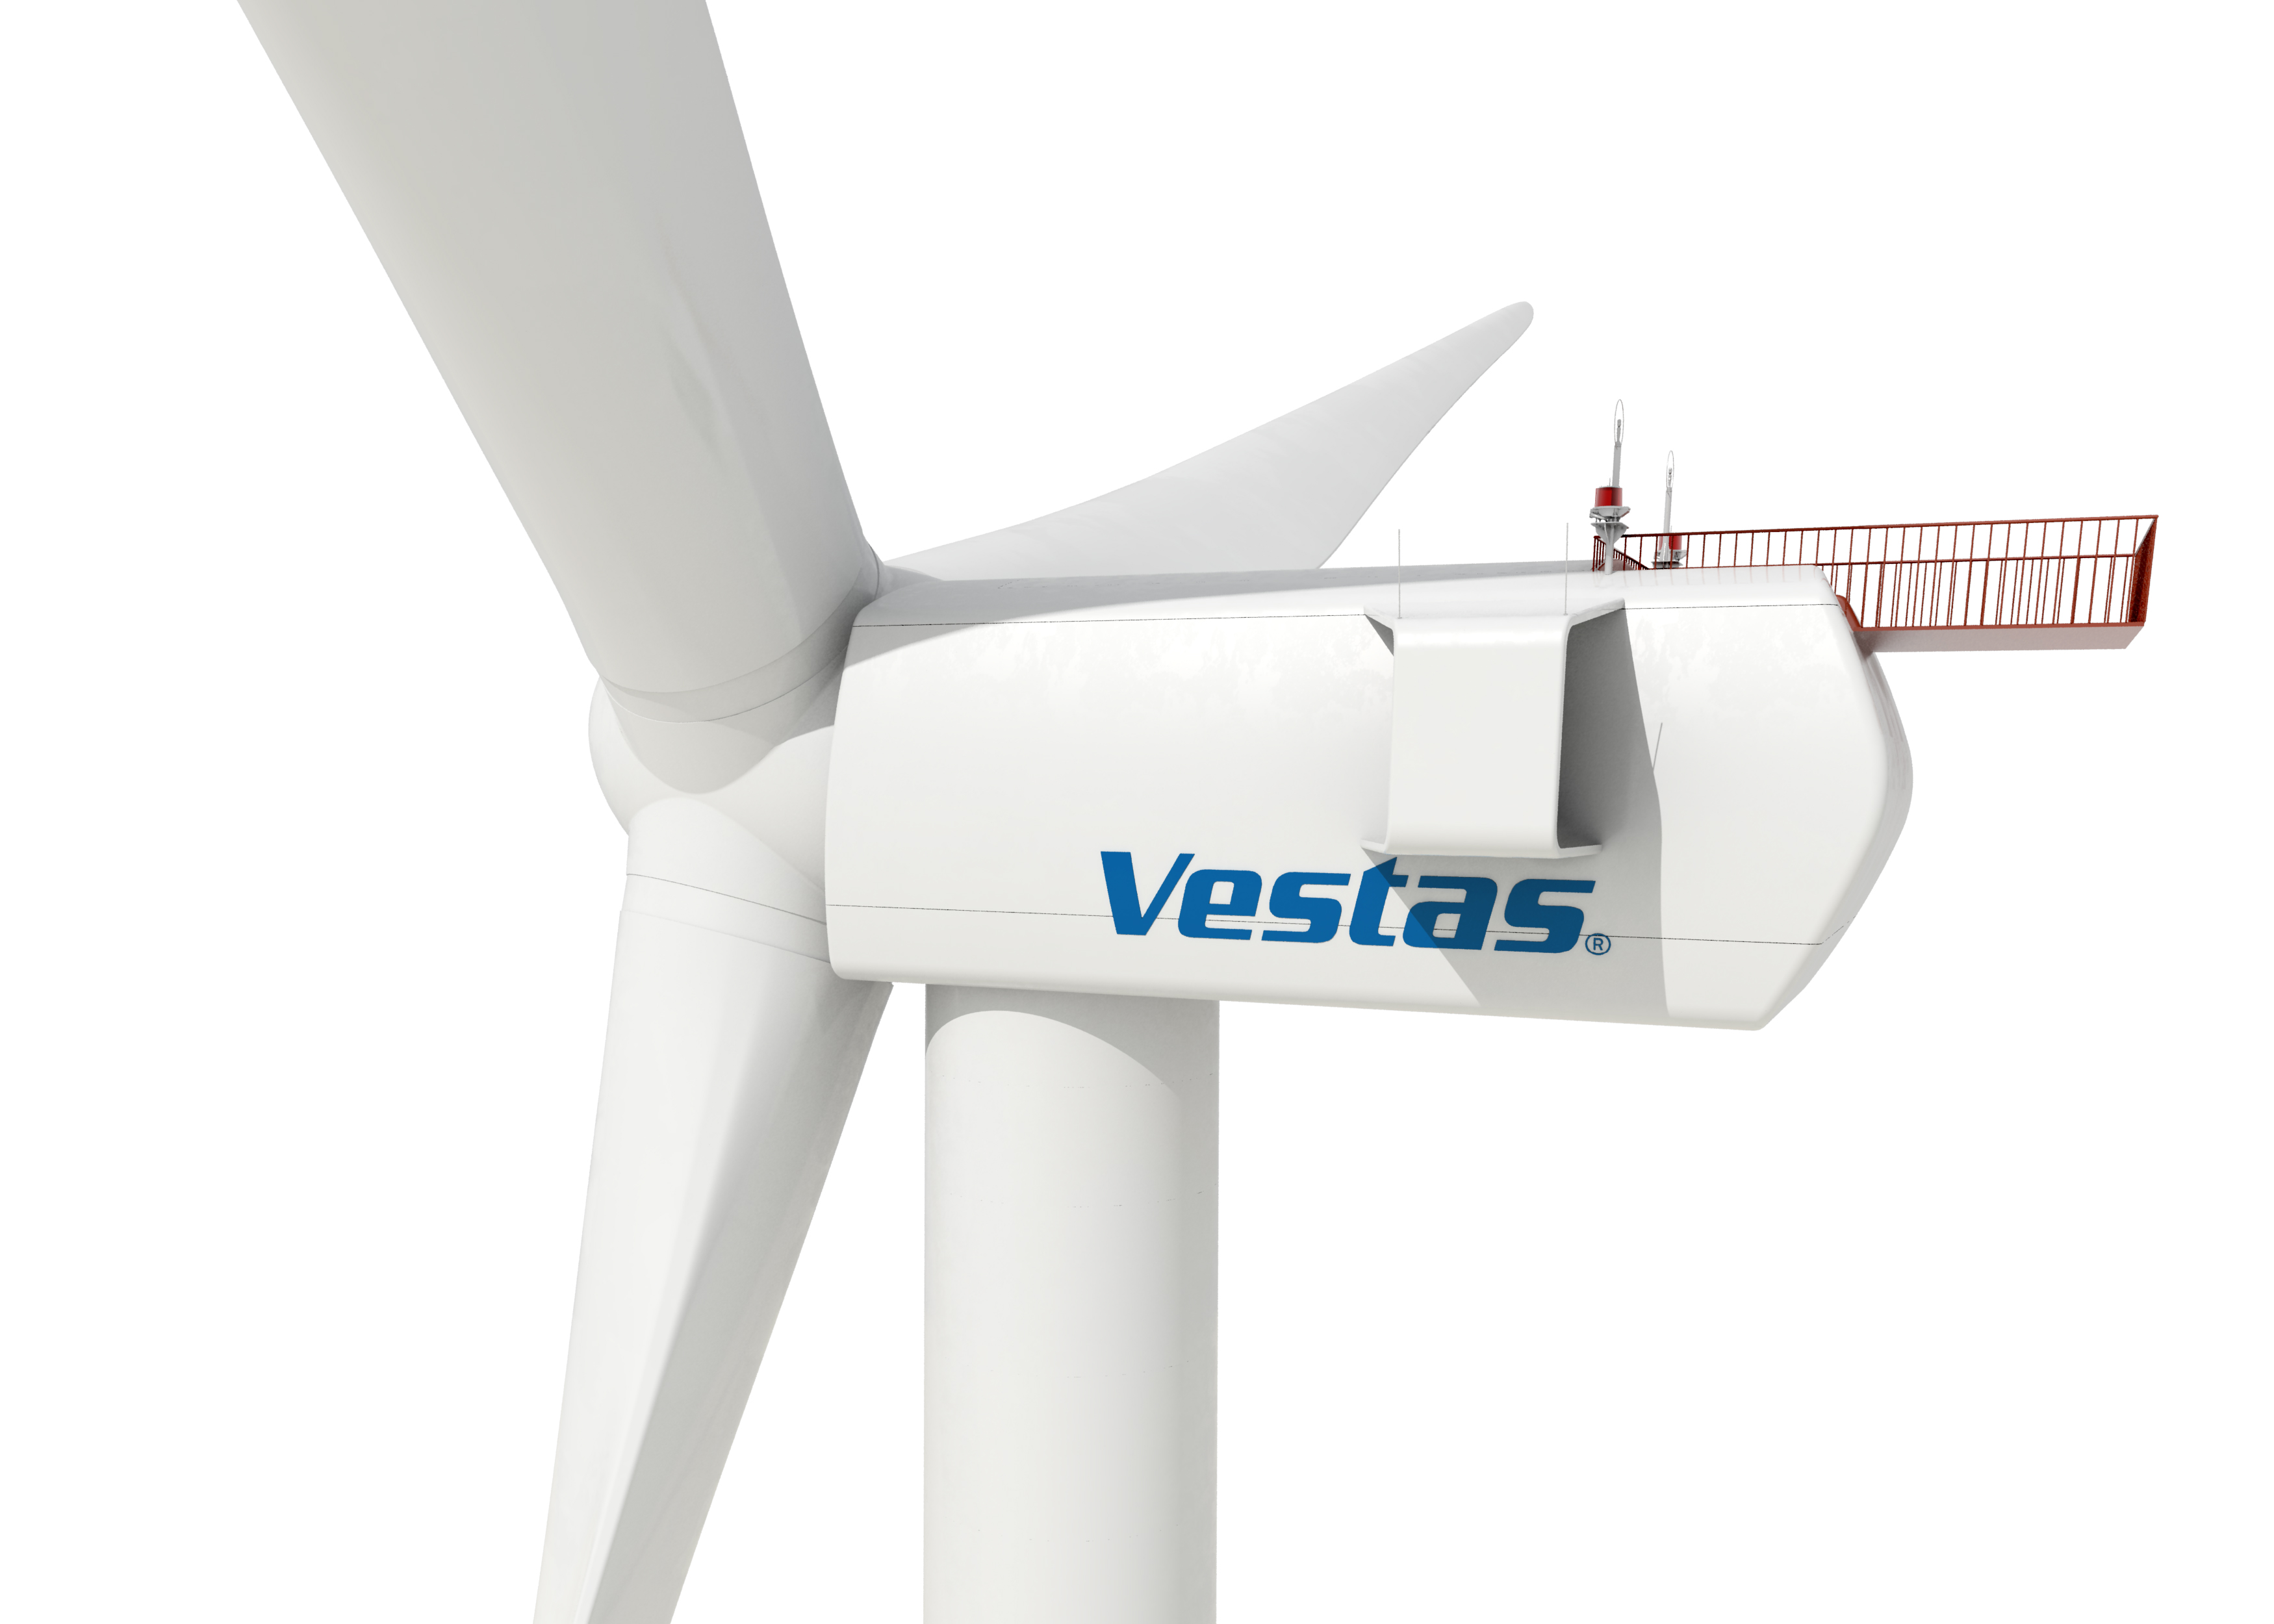 La eólica Vestas negocia con Mitsubishi Heavy Industries